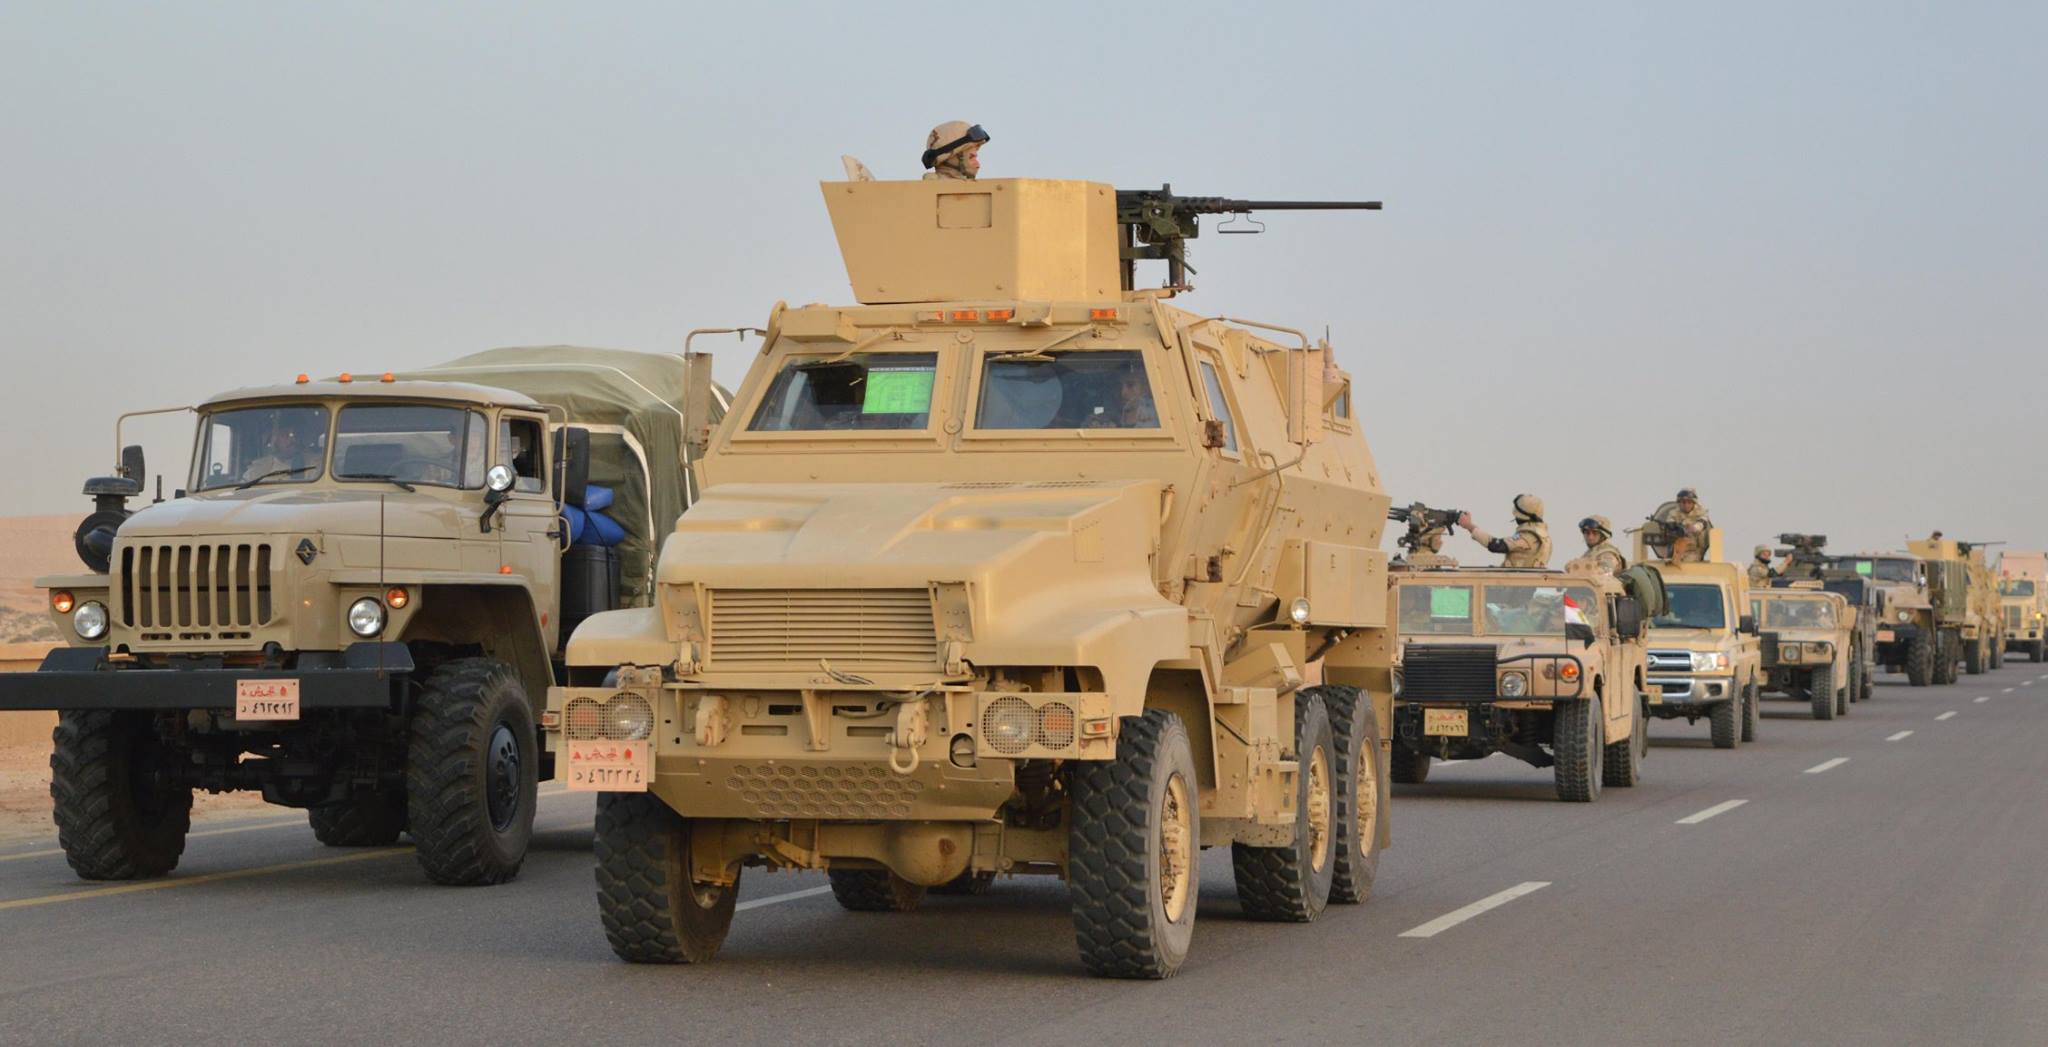   خبير عسكري يشرح آلية العملية الشاملة في سيناء